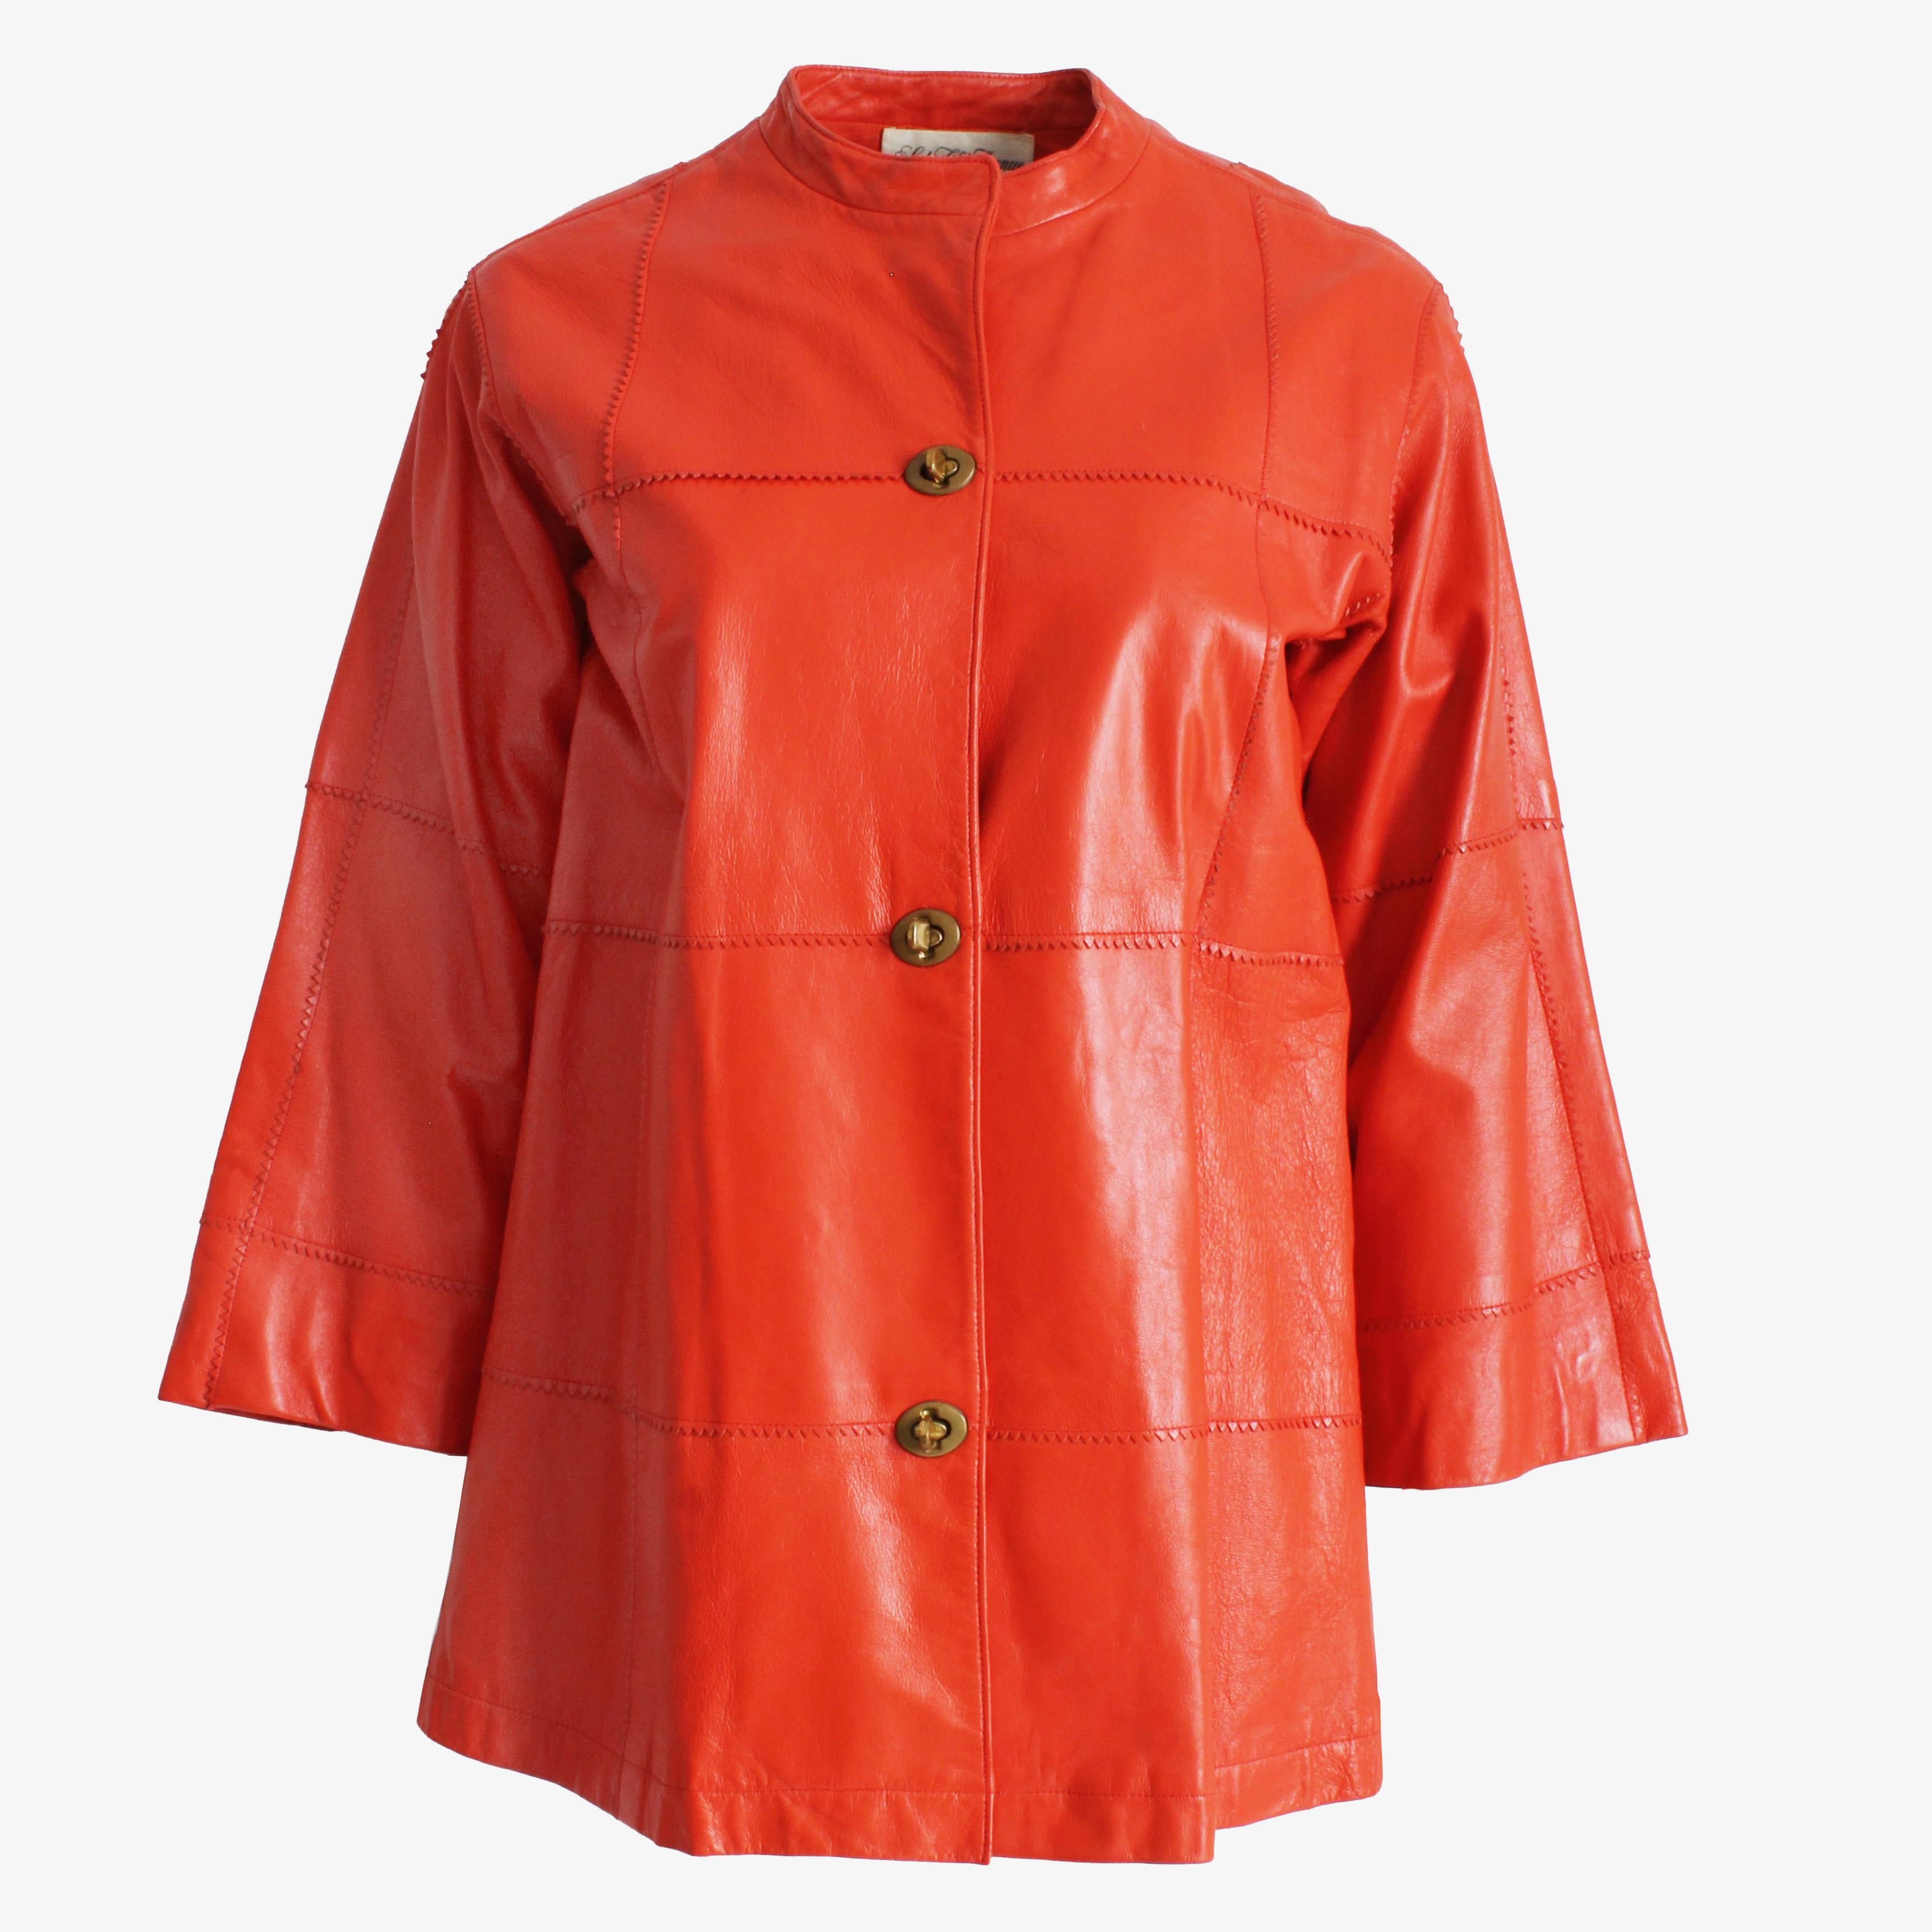 Authentique, d'occasion, vintage Bonnie Cashin for Sills veste en cuir orange, probablement fabriquée dans les années 60.  Une veste en cuir à manches kimono chic dans une couleur vibrante et difficile à trouver, vendue à l'origine par Saks Fifth